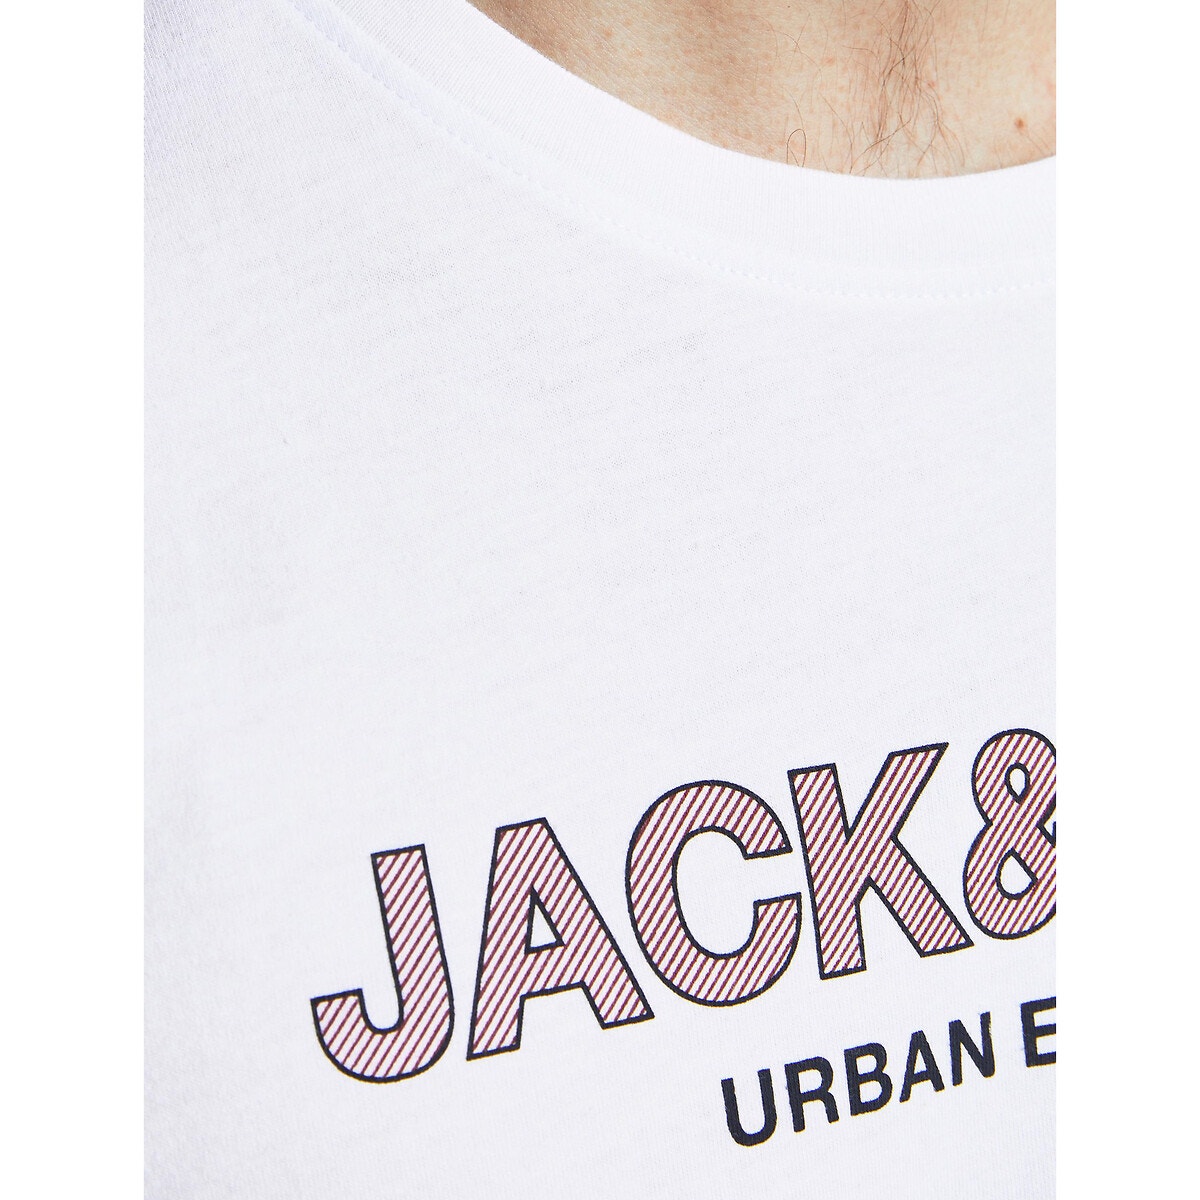 Κοντομάνικο T-shirt, Urban Blocking